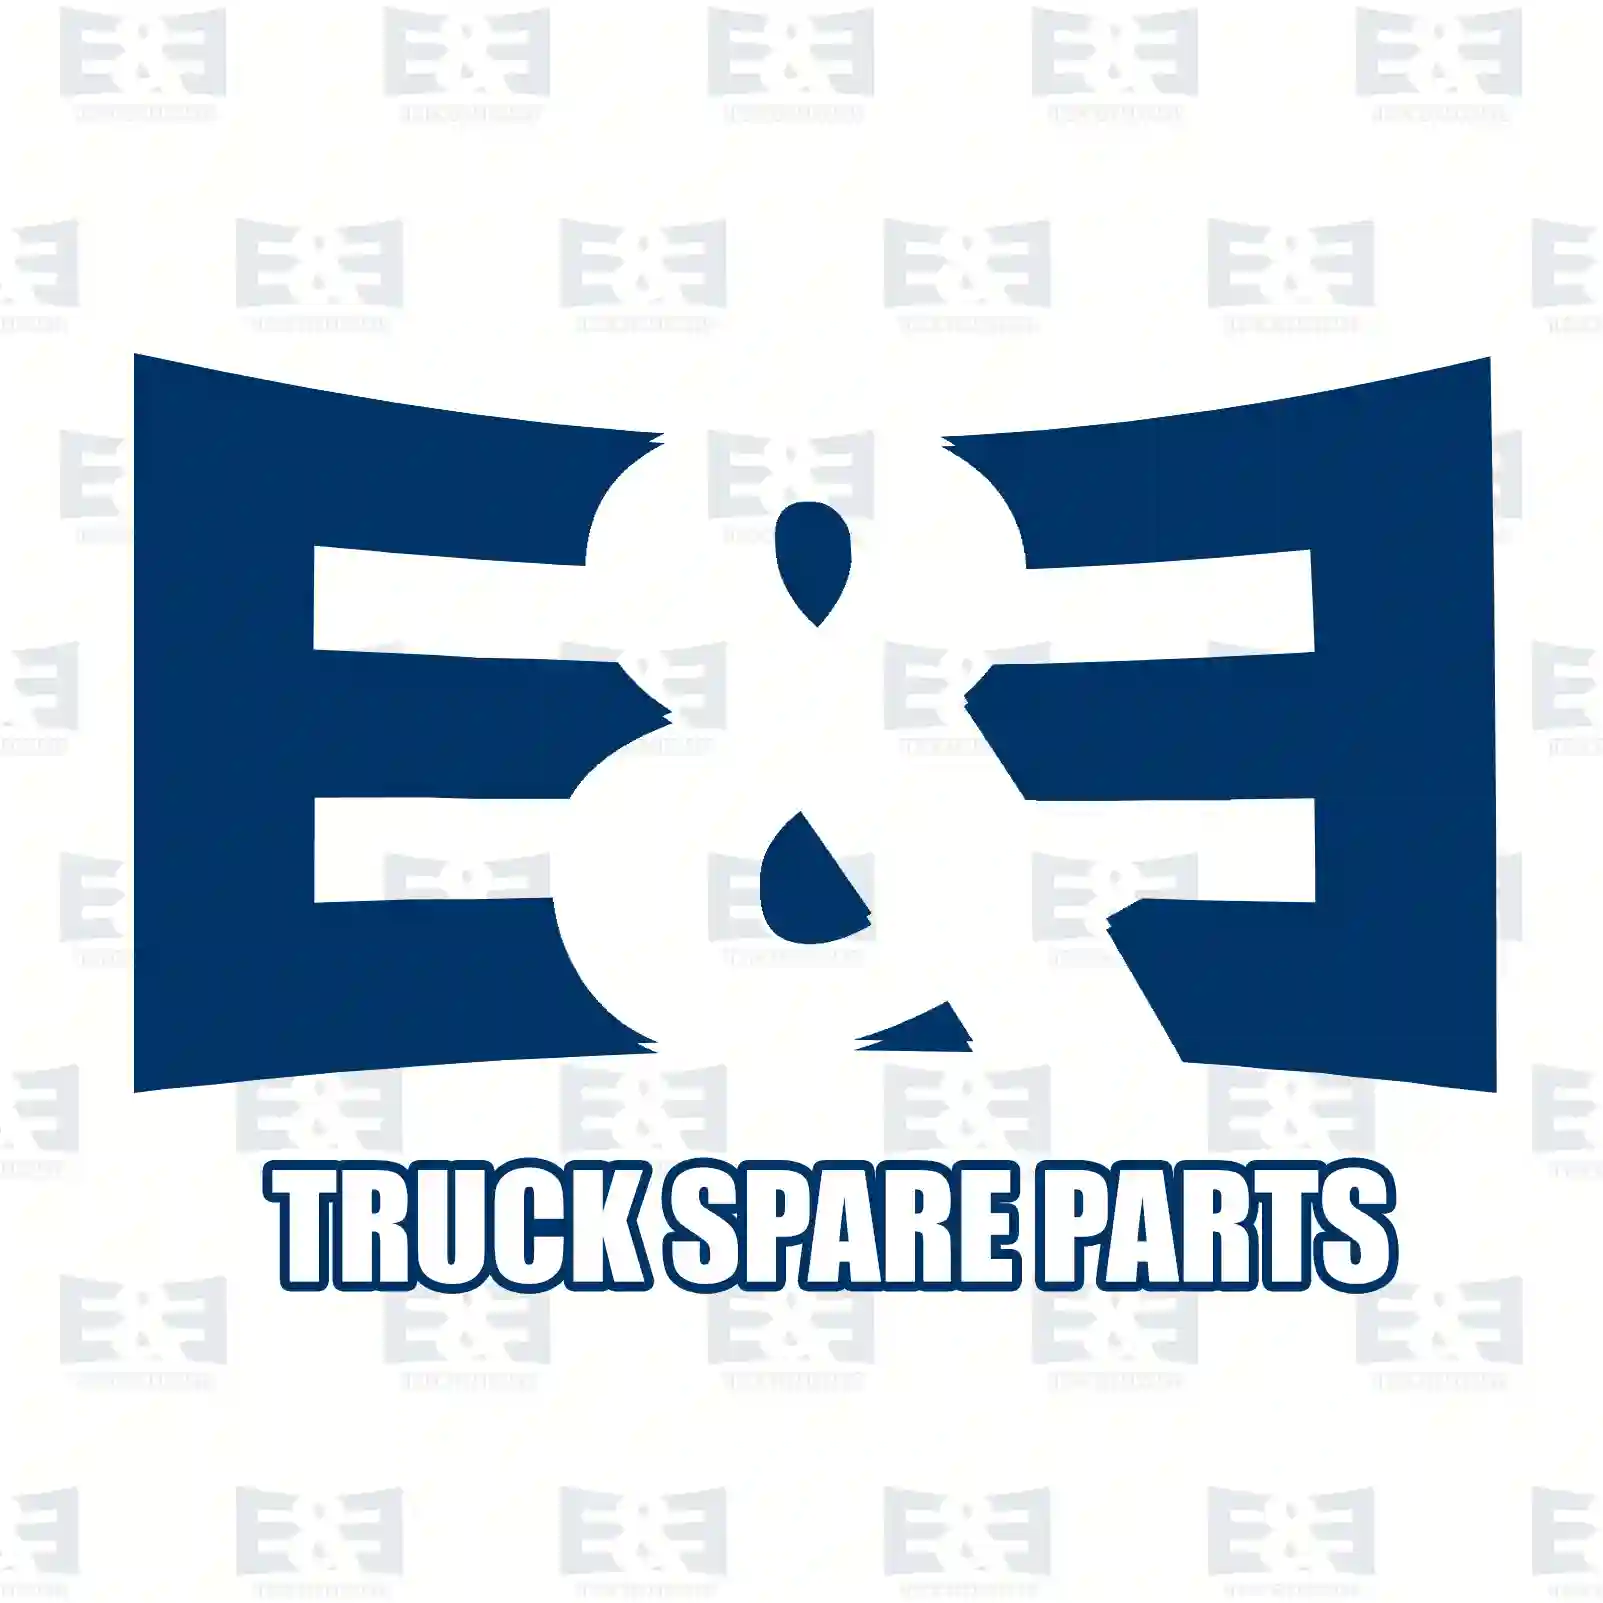 Switch, 2E2299425, 0025456907, ZG20176-0008 ||  2E2299425 E&E Truck Spare Parts | Truck Spare Parts, Auotomotive Spare Parts Switch, 2E2299425, 0025456907, ZG20176-0008 ||  2E2299425 E&E Truck Spare Parts | Truck Spare Parts, Auotomotive Spare Parts